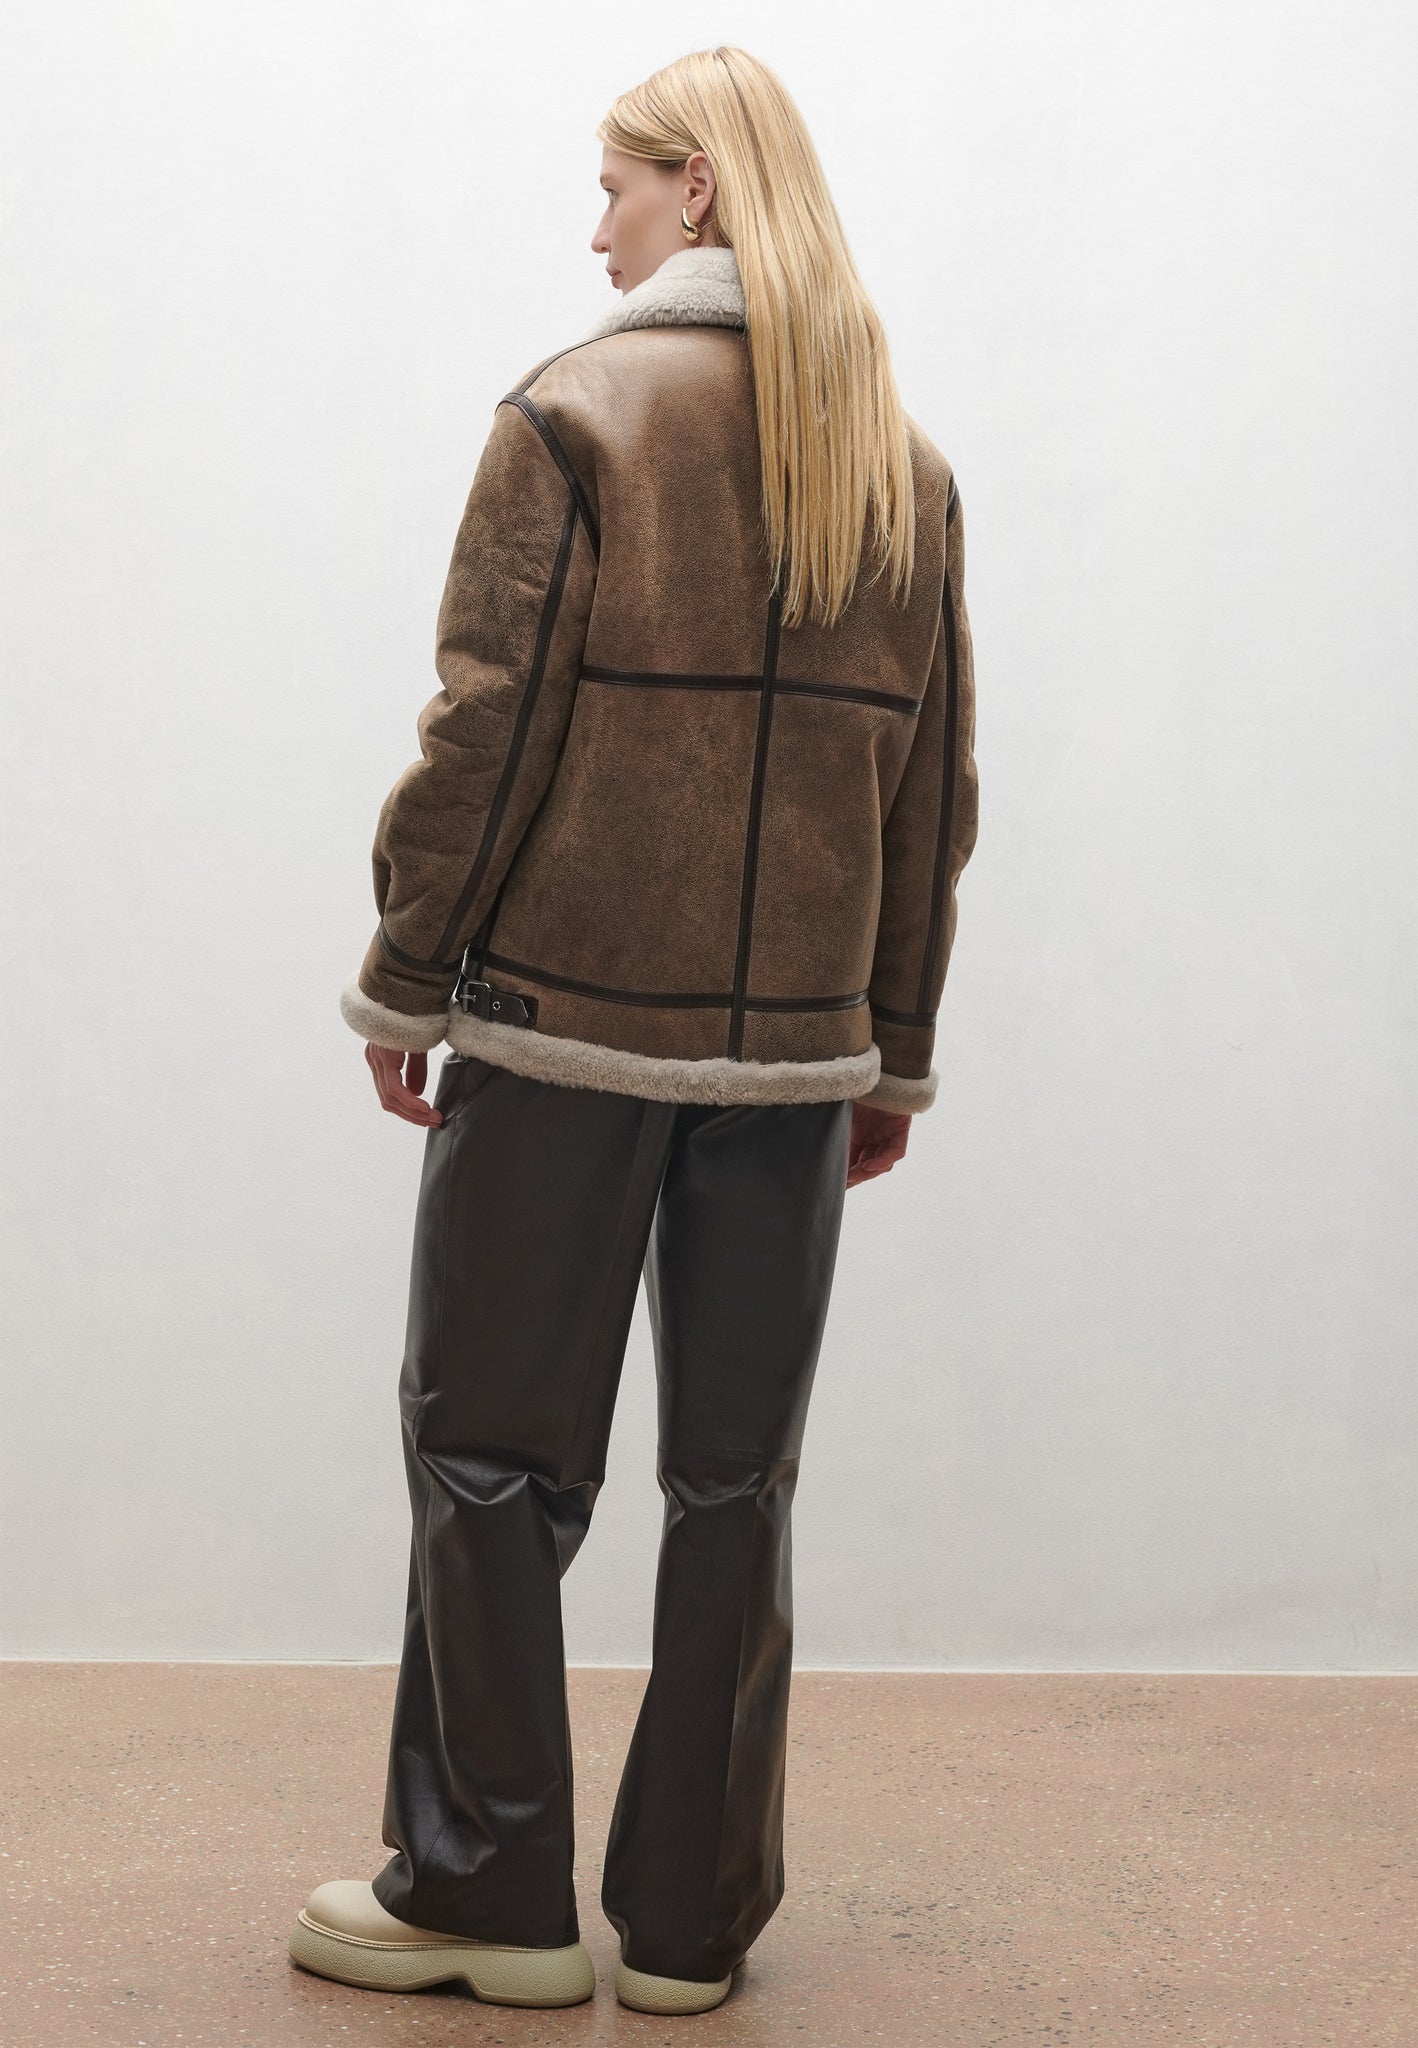 KILANA | Aviator inspired shearling jacket